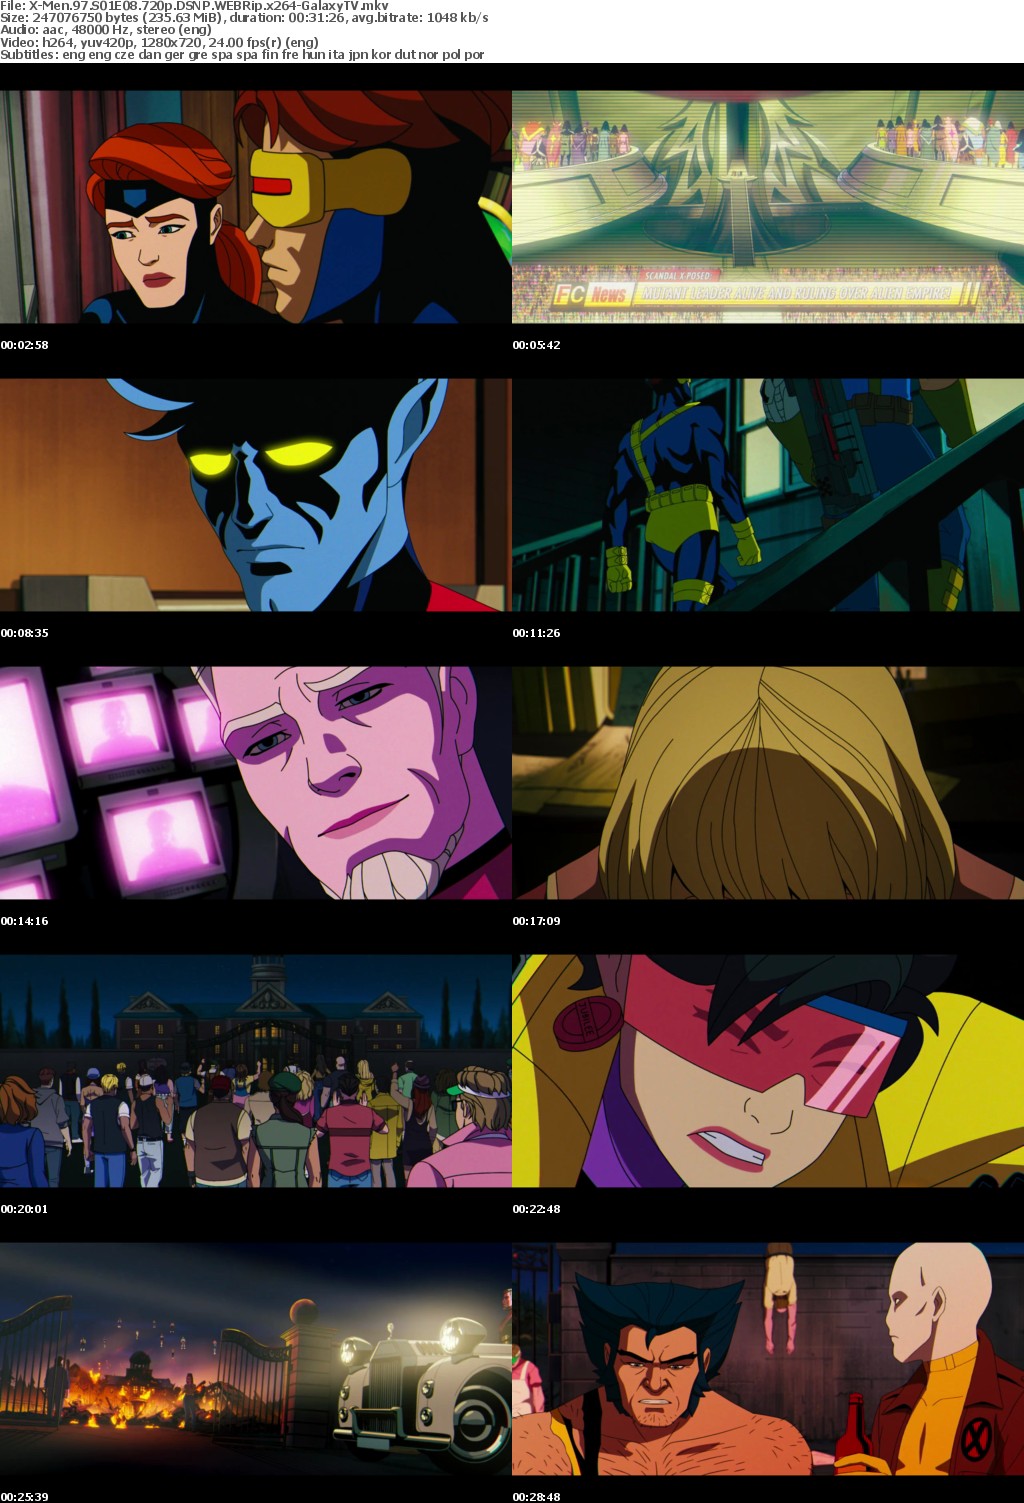 X-Men 97 S01 COMPLETE 720p DSNP WEBRip x264-GalaxyTV